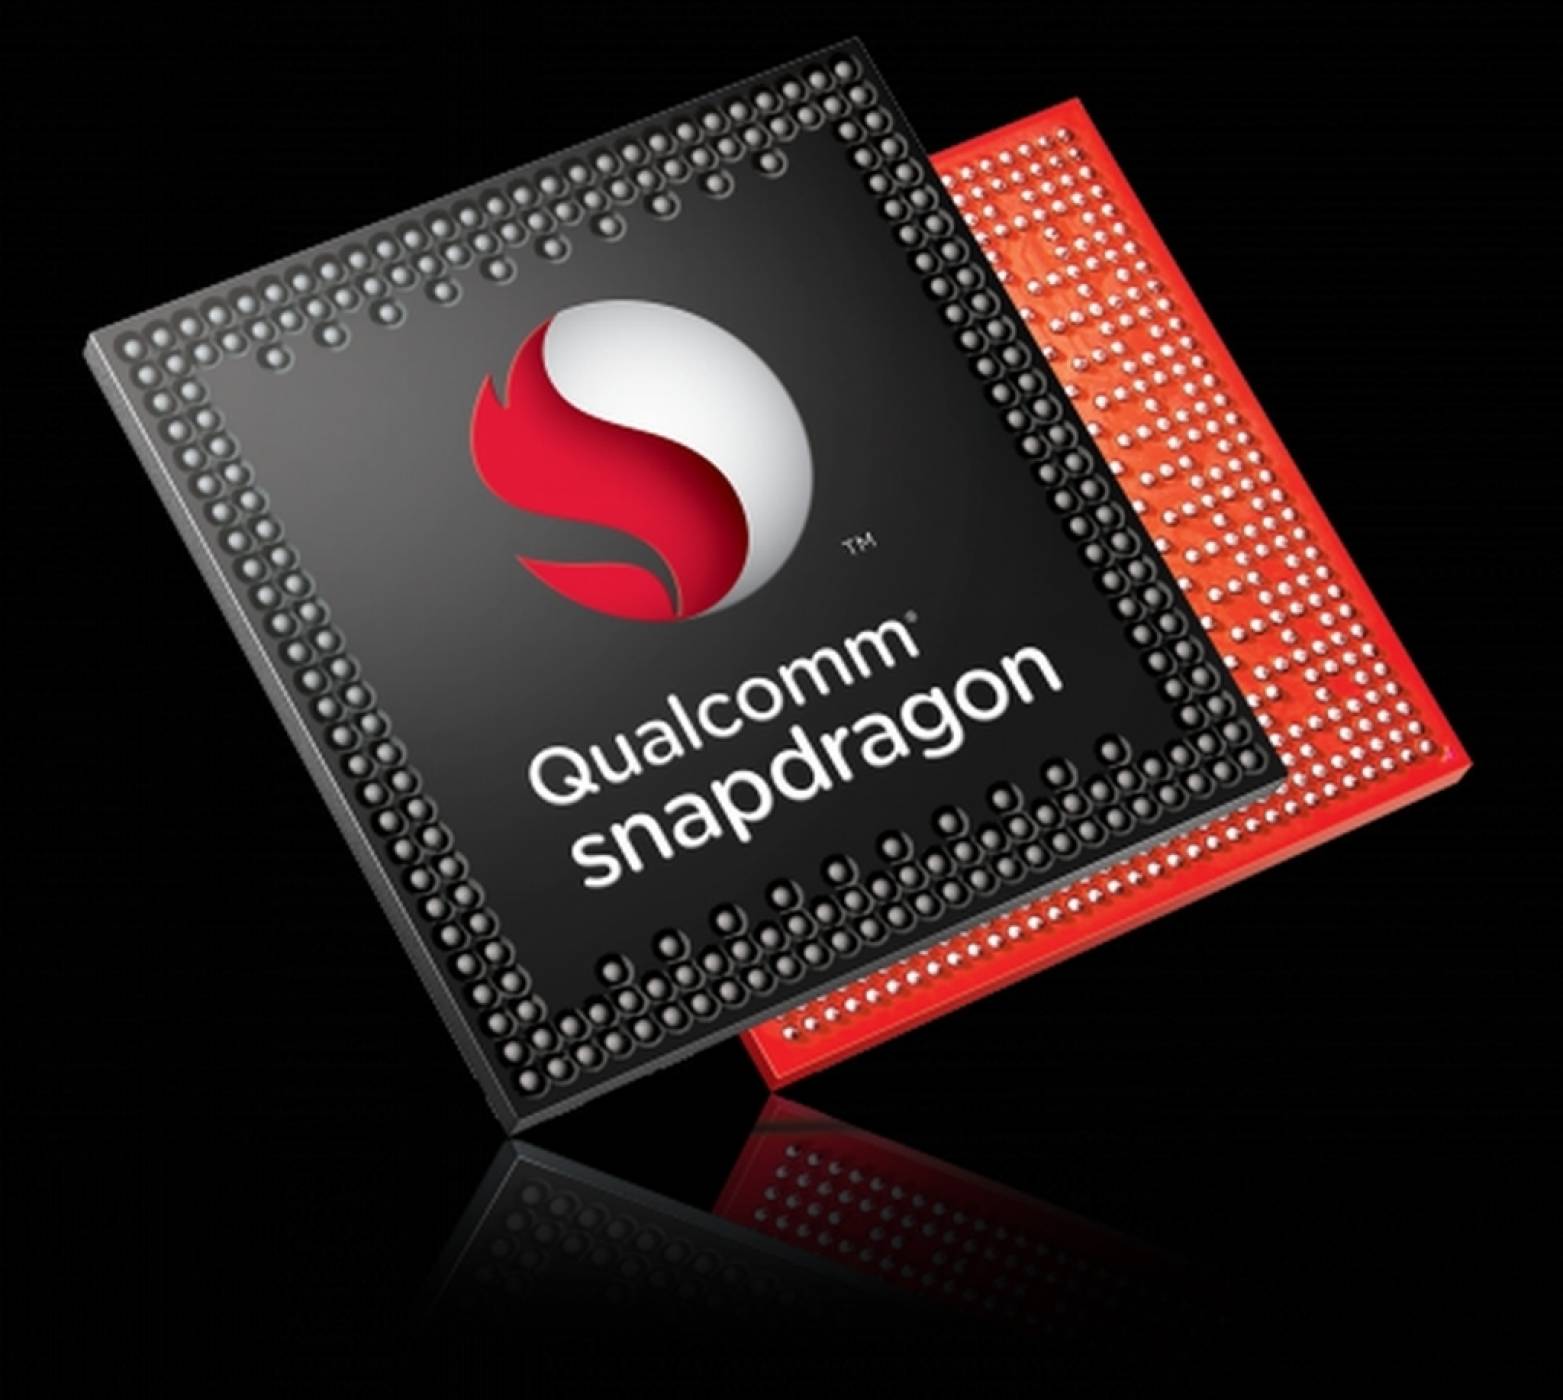 Snapdragon 700 ще донесе по-издръжлива батерия и двойно по-бърза AI обработка при средния клас устройства